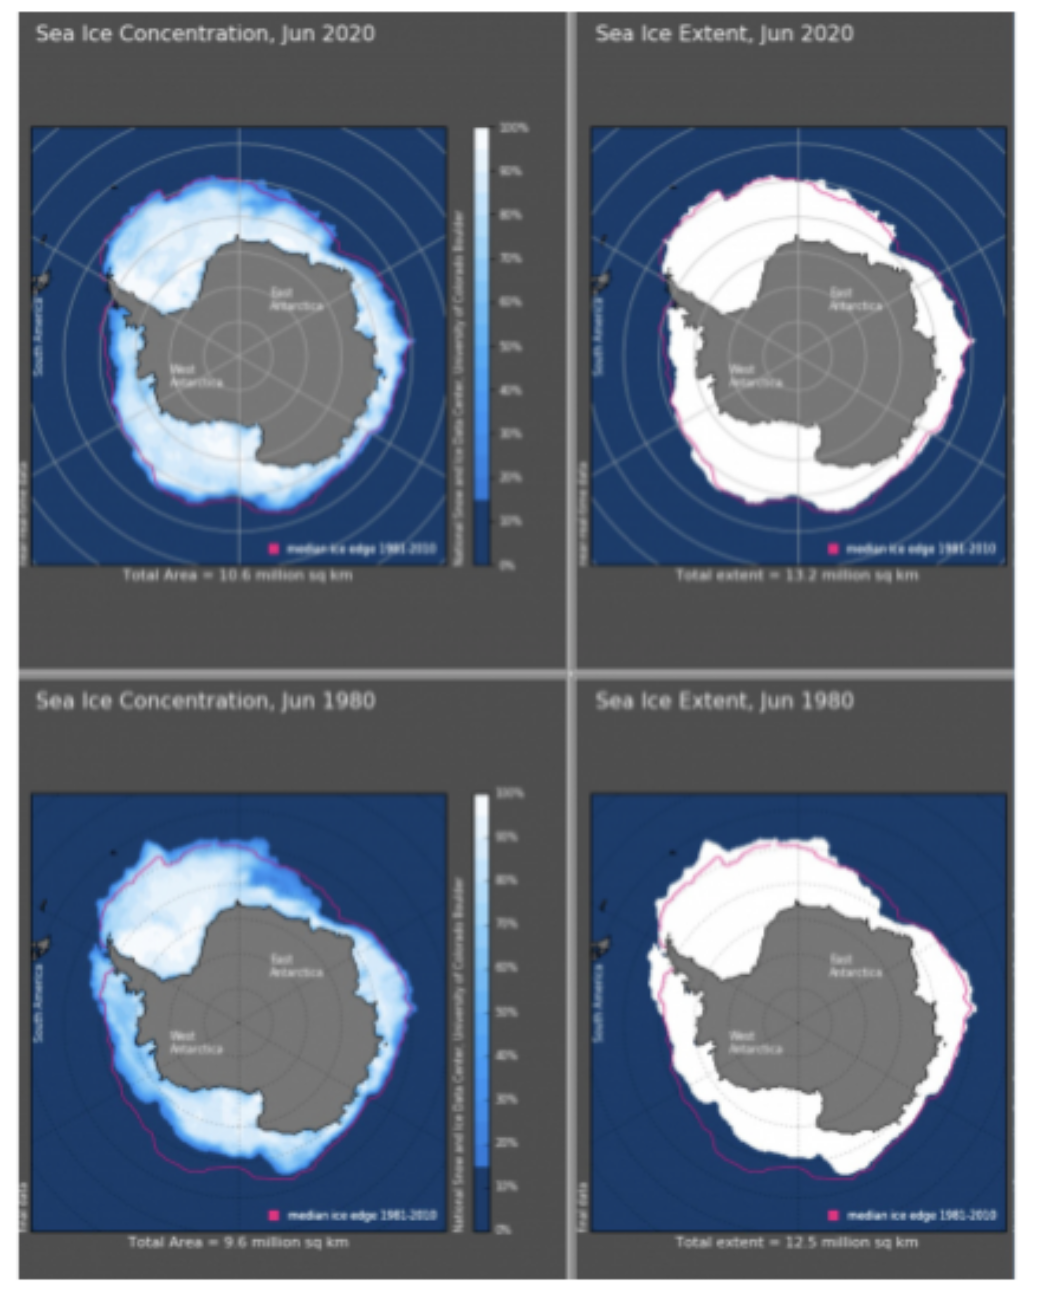 Il y a plus de glace au Pôle sud qu’il y a 40 ans